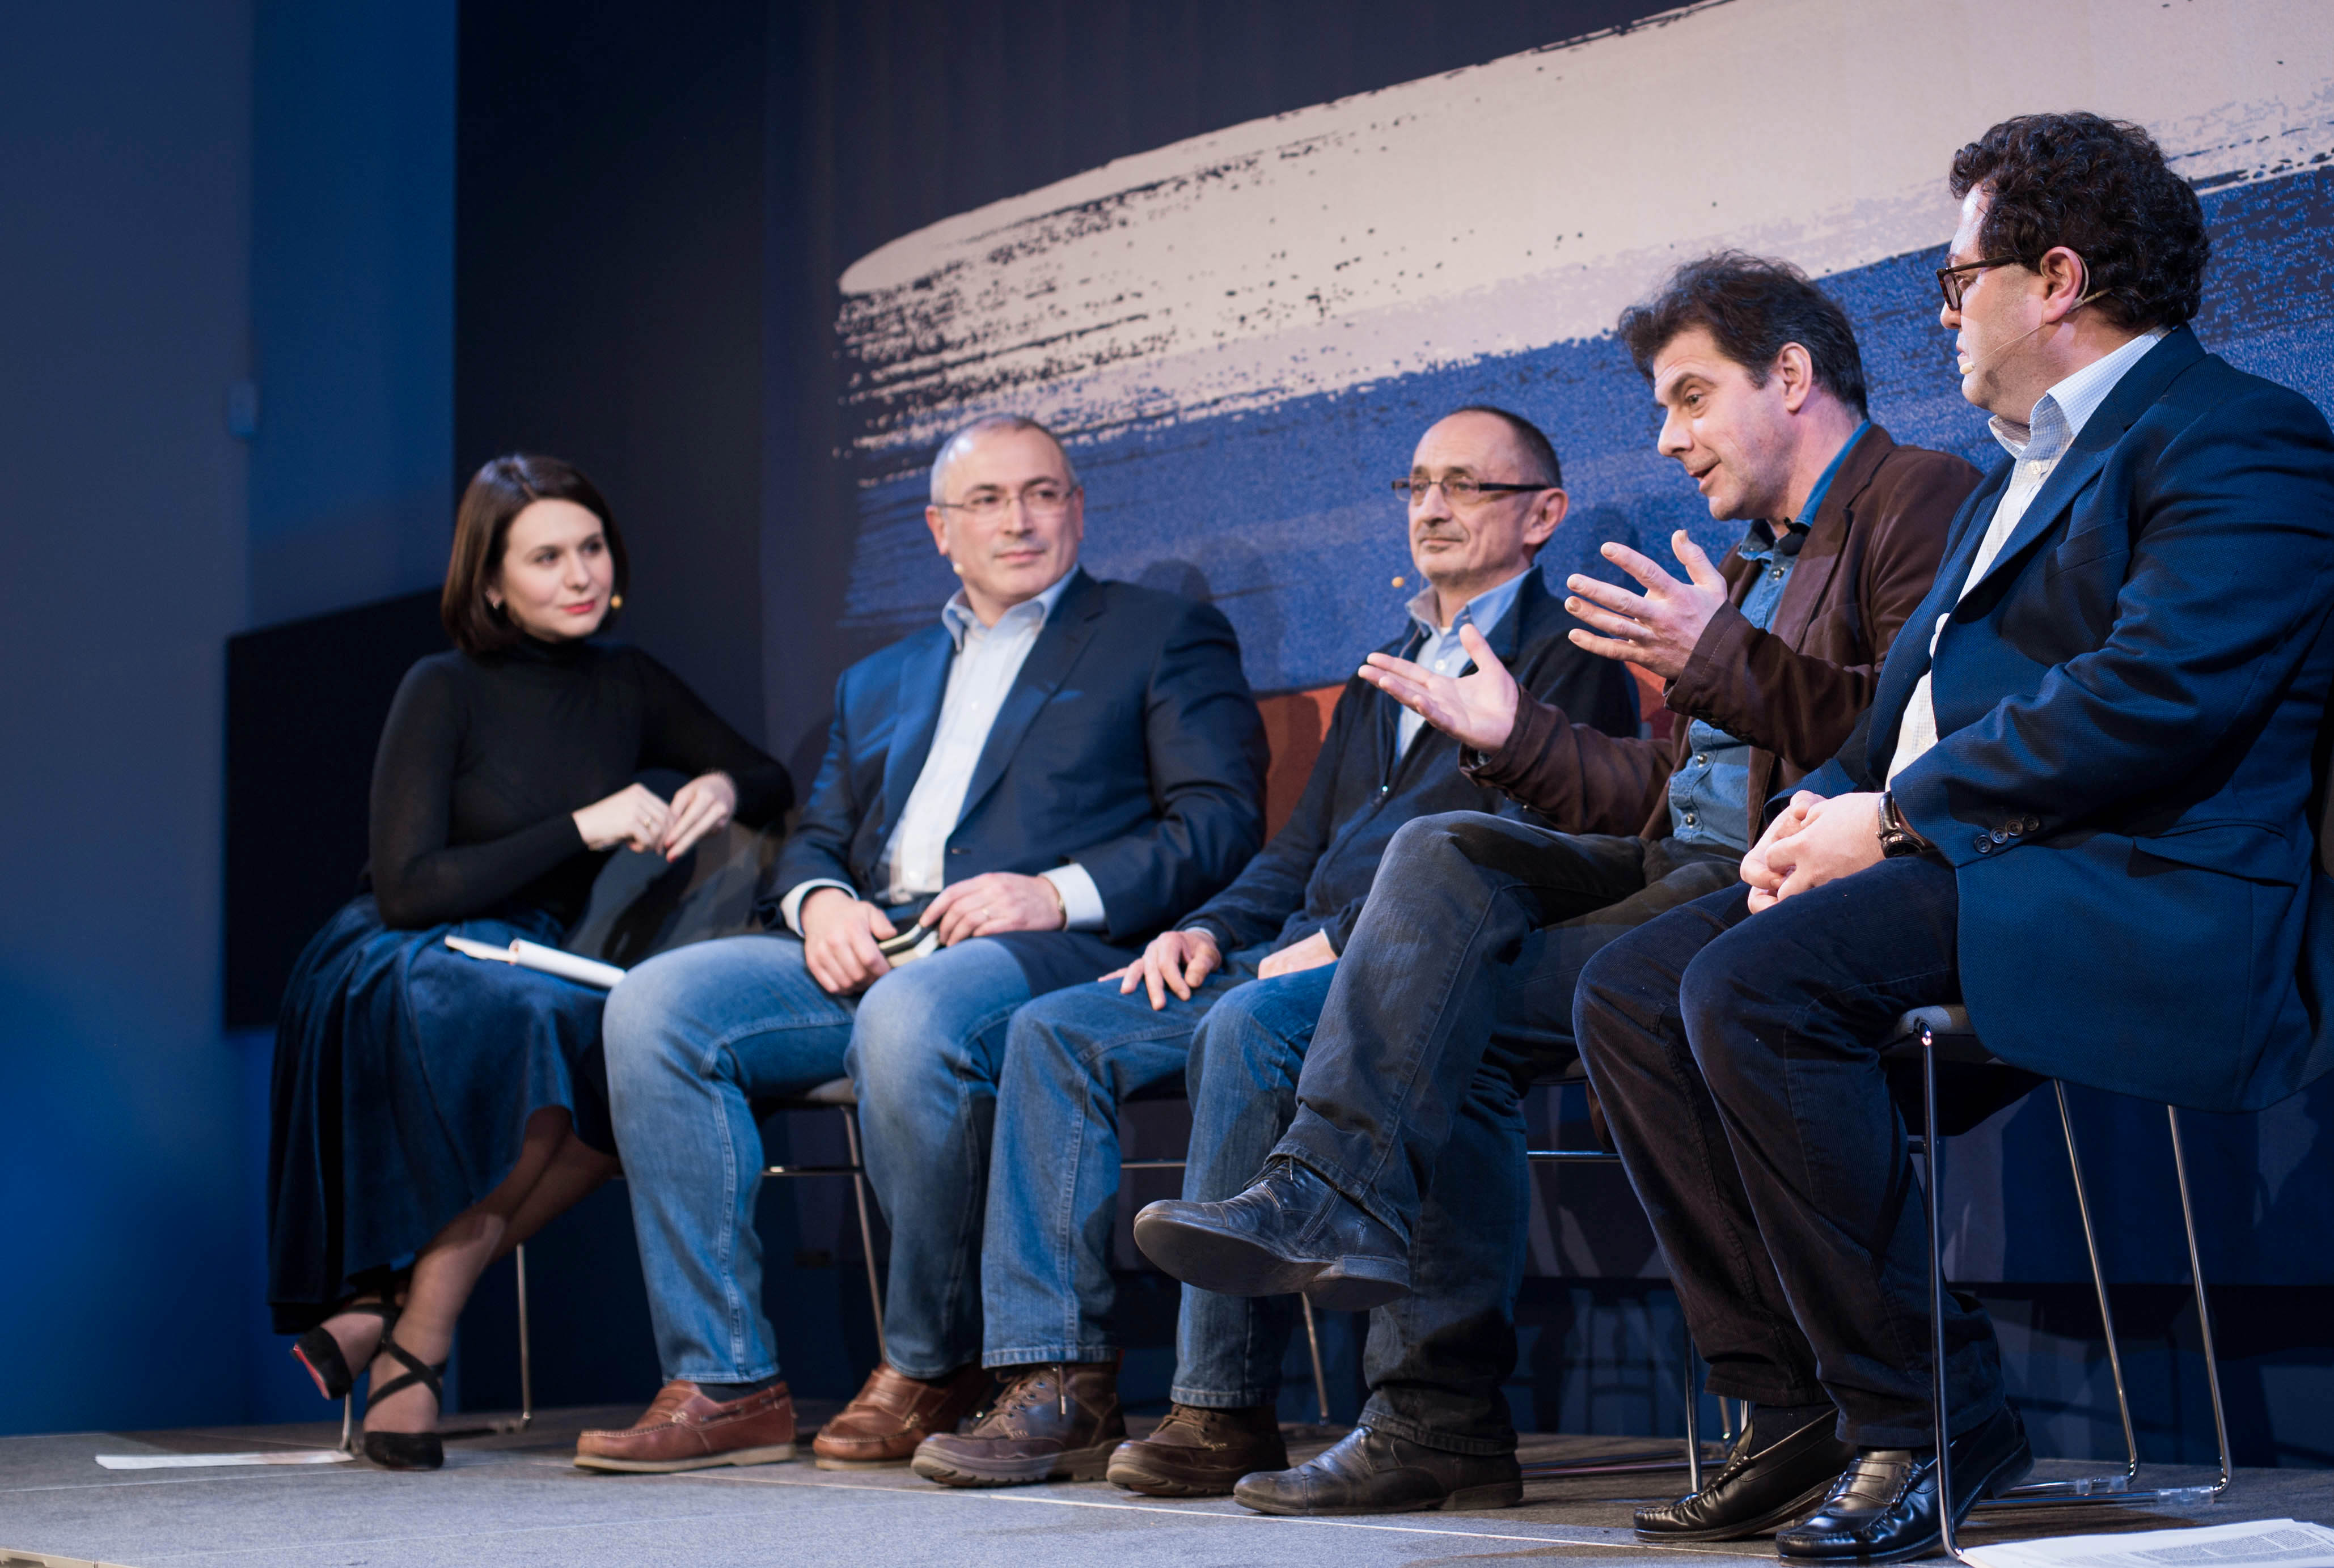 الصحفية إيلينا سيرفيتاز تدير مناقشة في لندن مع ميخائيل خودوركوفسكي (الثاني من اليسار)، والعالمين في مجال العلوم السياسية ألكسندر موروزوف (في الوسط) وكيريل روجوف (الثاني من اليمين)، والصحفي في مجلة الإيكونوميست أركادي أوستروفسكي (على اليمين).